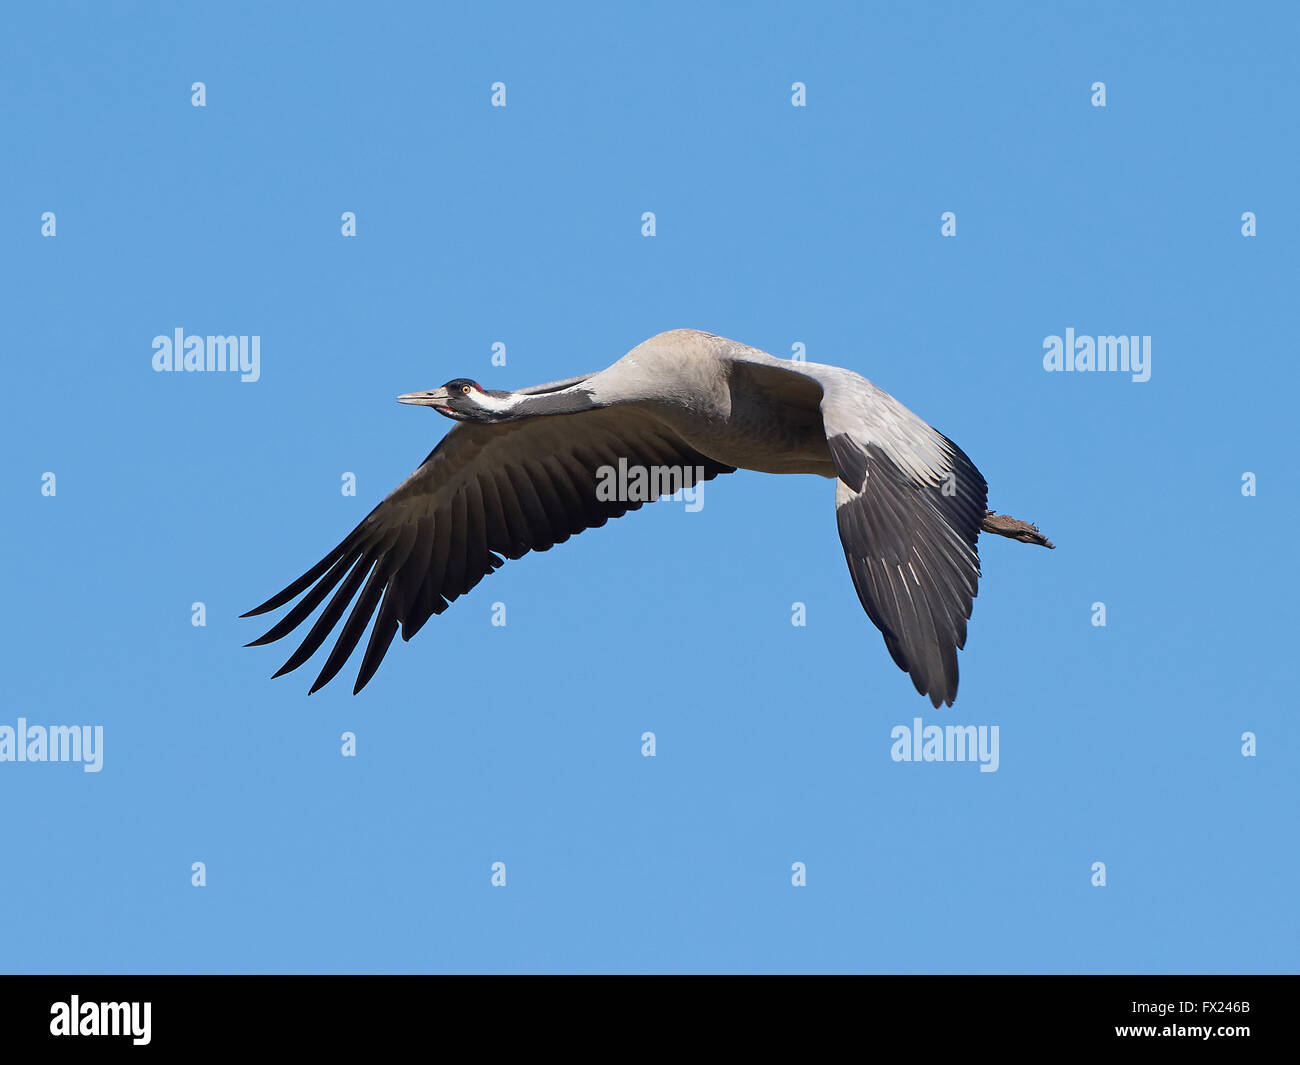 Grulla común en vuelo con cielos azules en el fondo Foto de stock